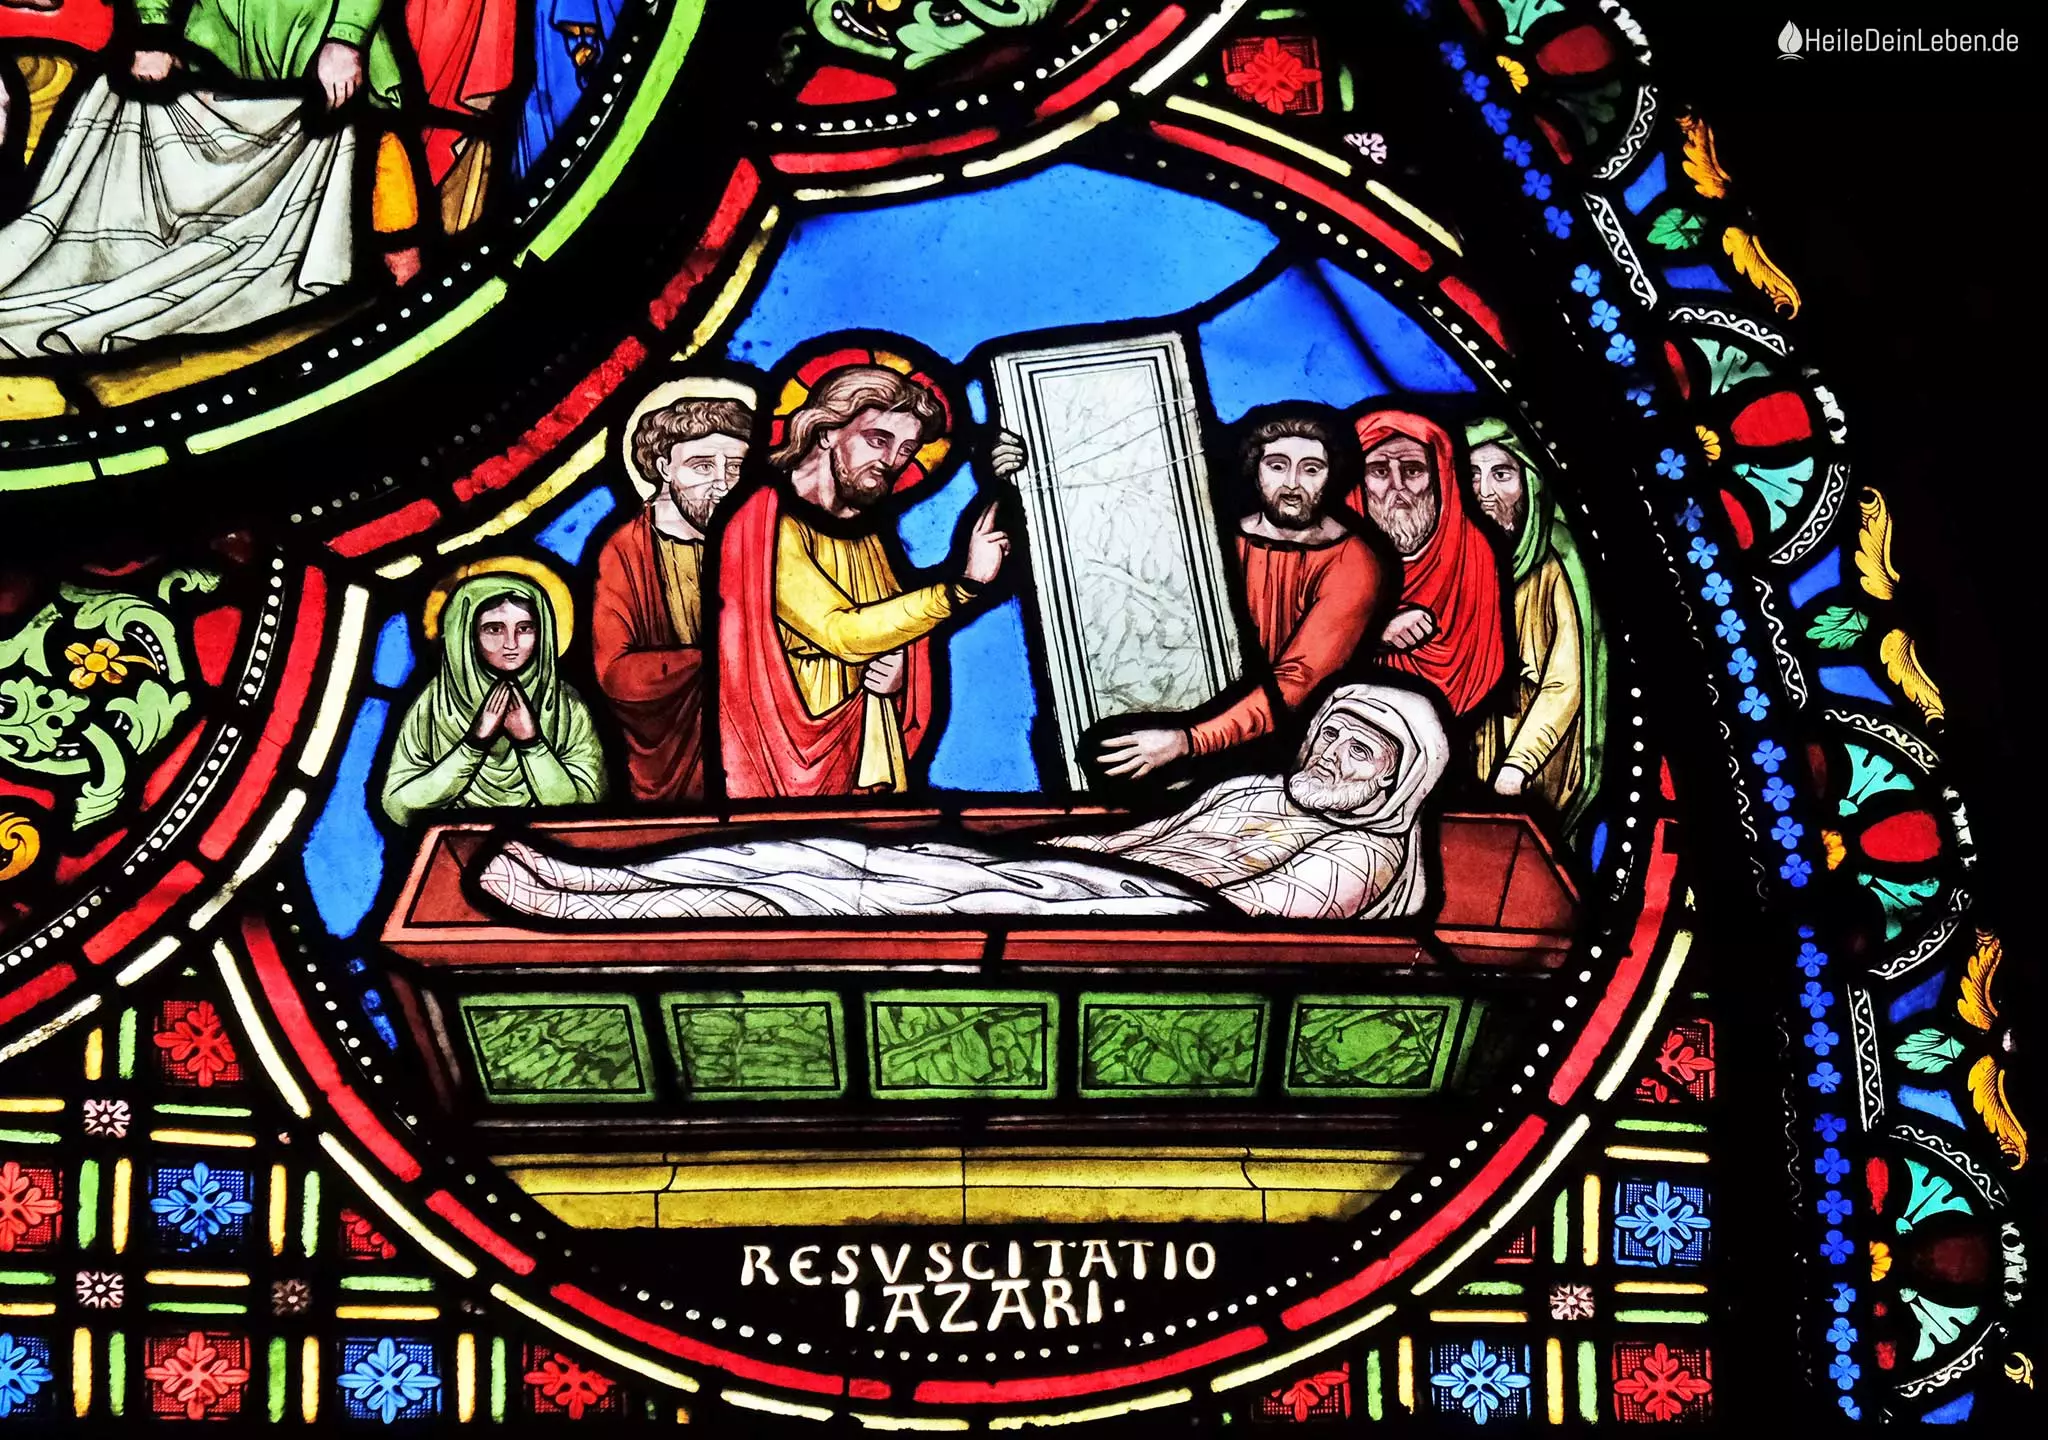 Die Auferstehung Lazarus, Bild aus der Pfarrkirche Saint-Germain-l’Auxerrois in Paris 